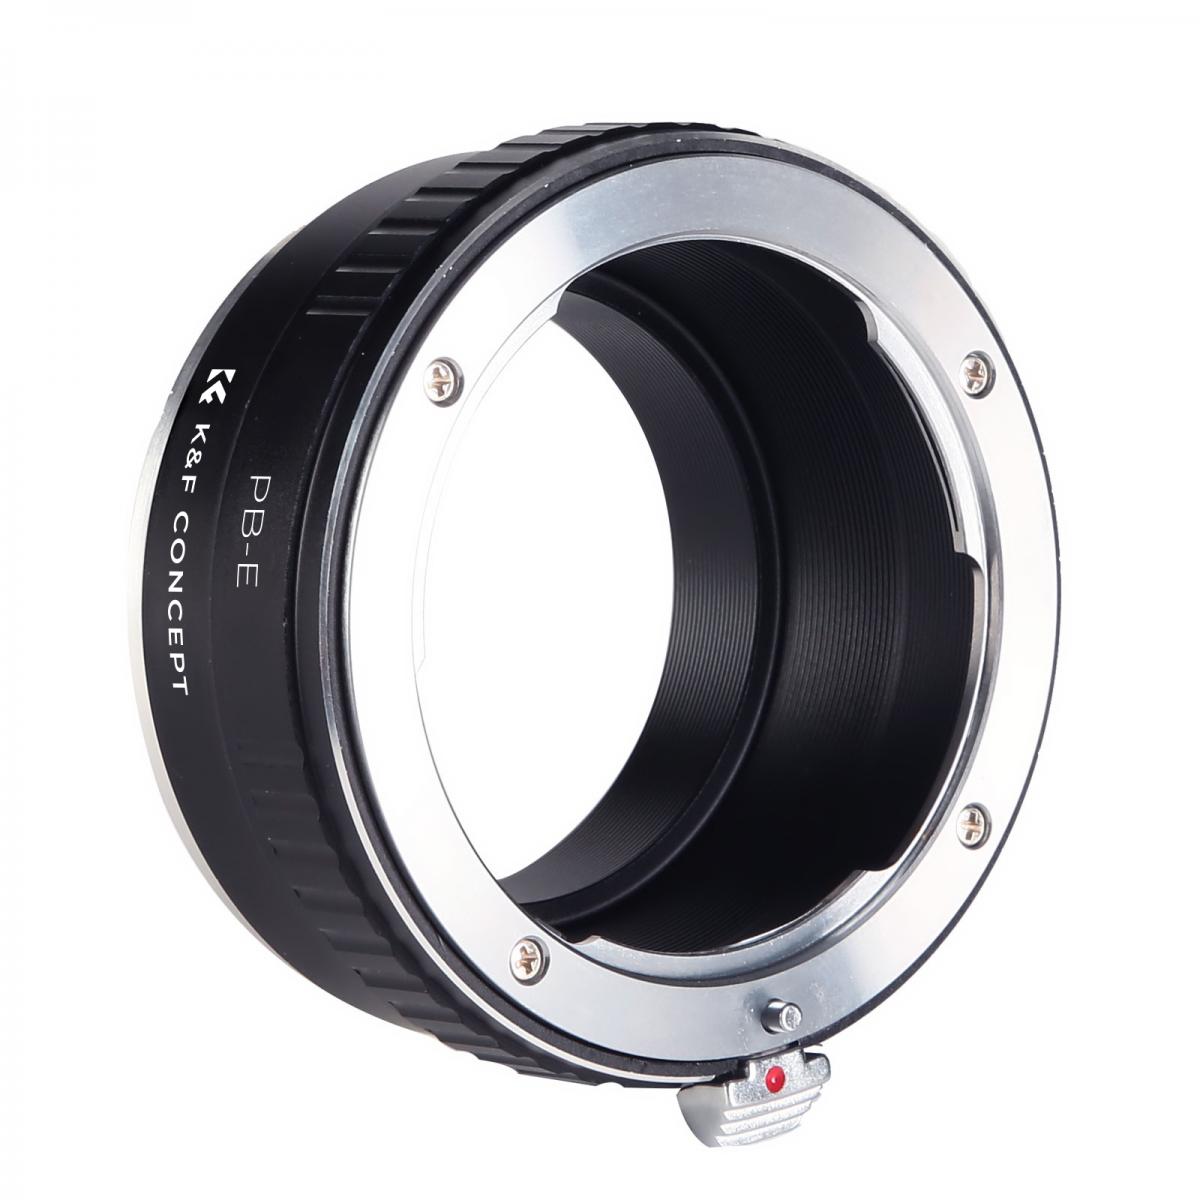 Kandf Concept M30101 Praktica Lenses To Sony E Lens Mount Adapter Kandf Concept